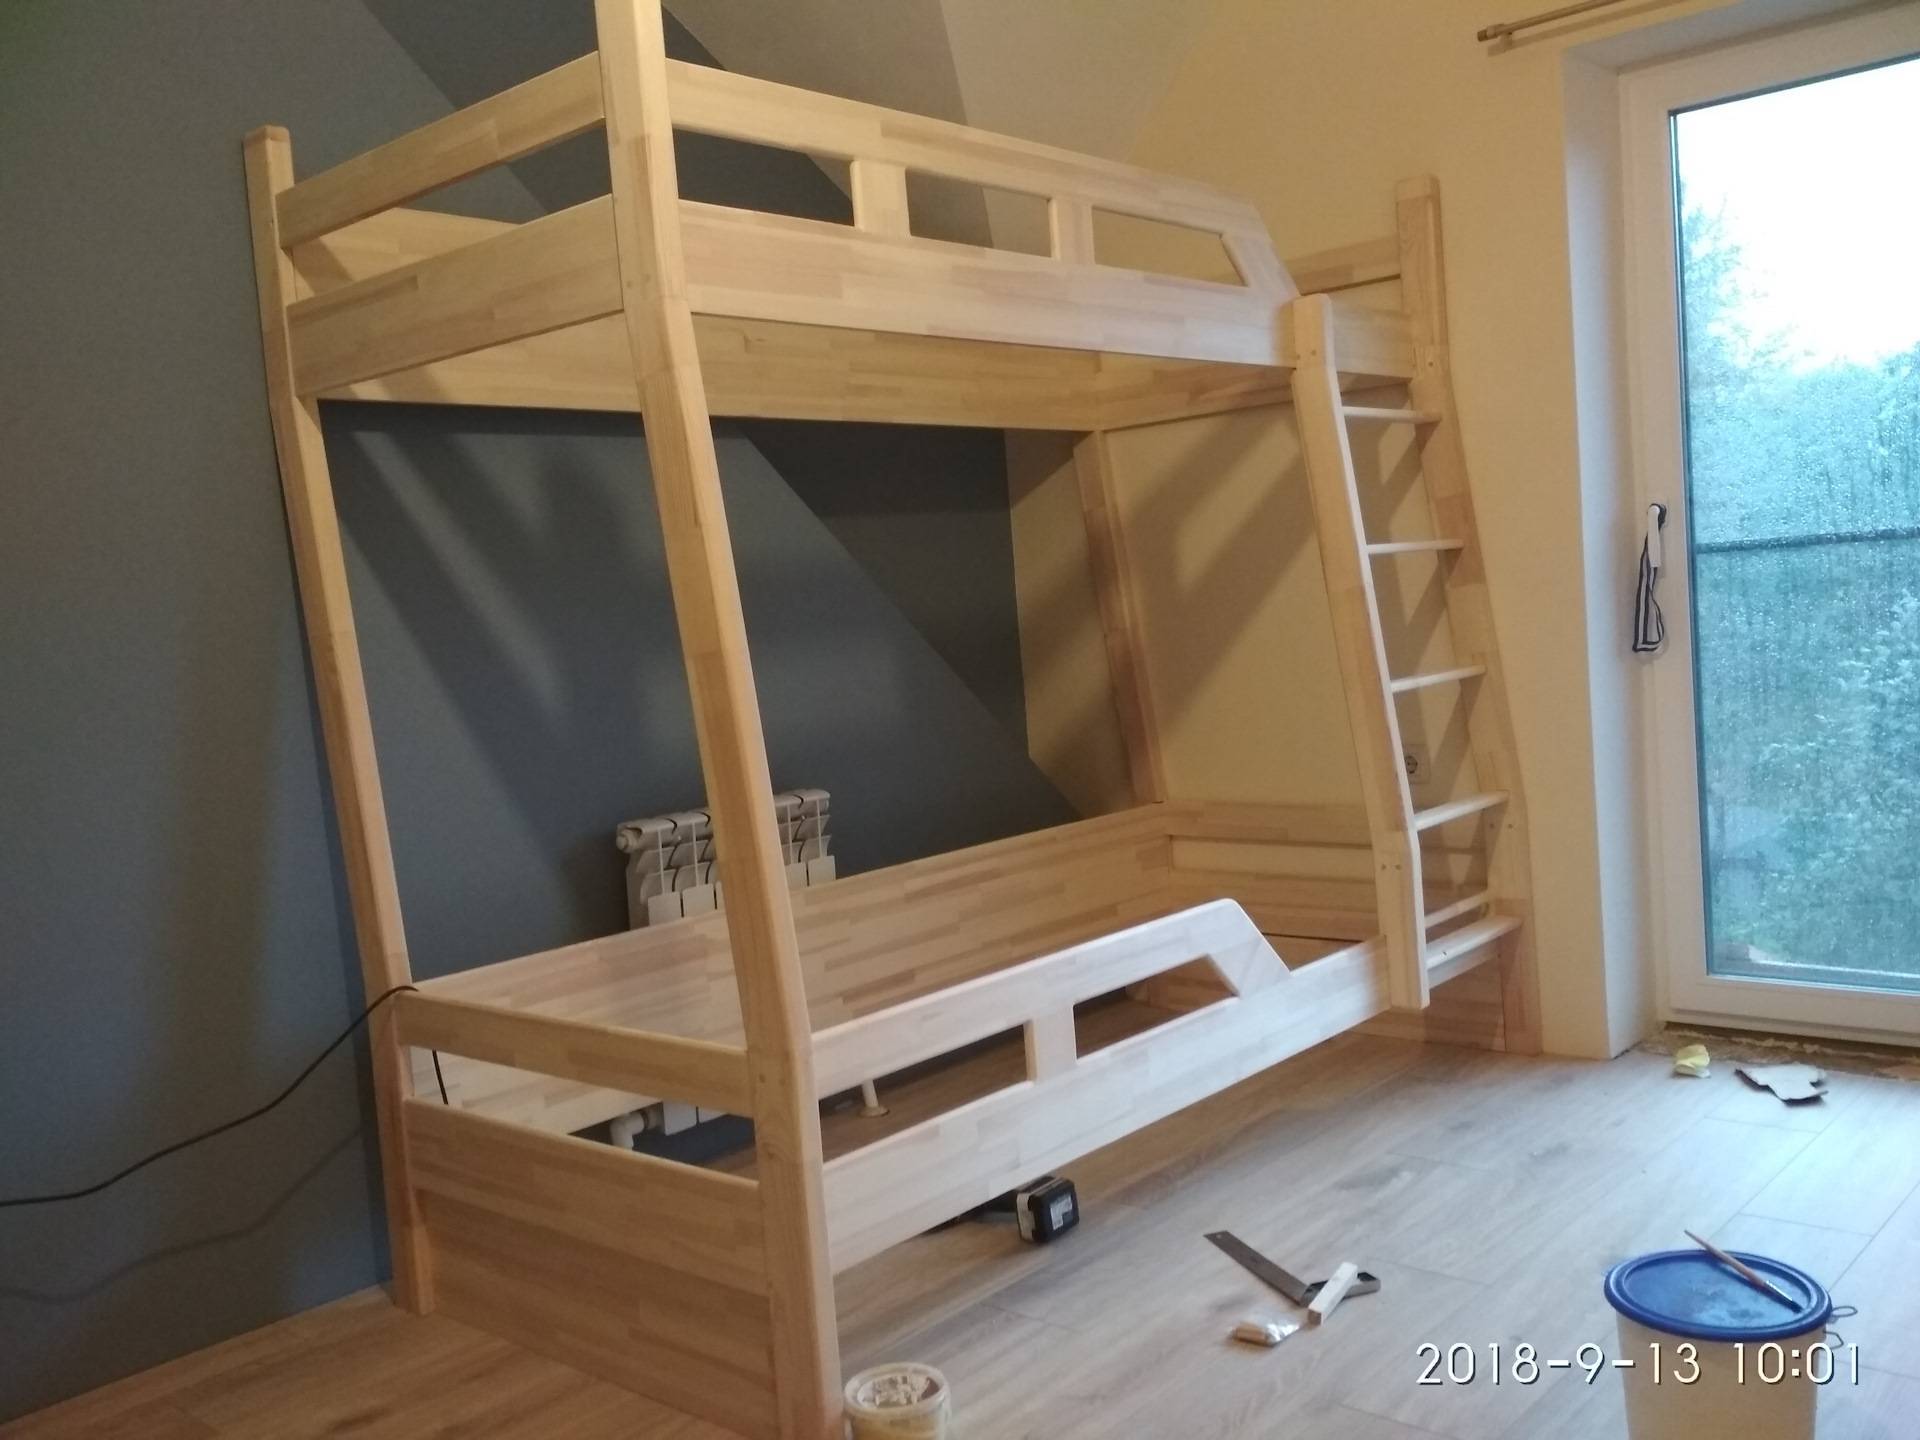 Как сделать двухъярусную кровать своими руками- инструкция +видео